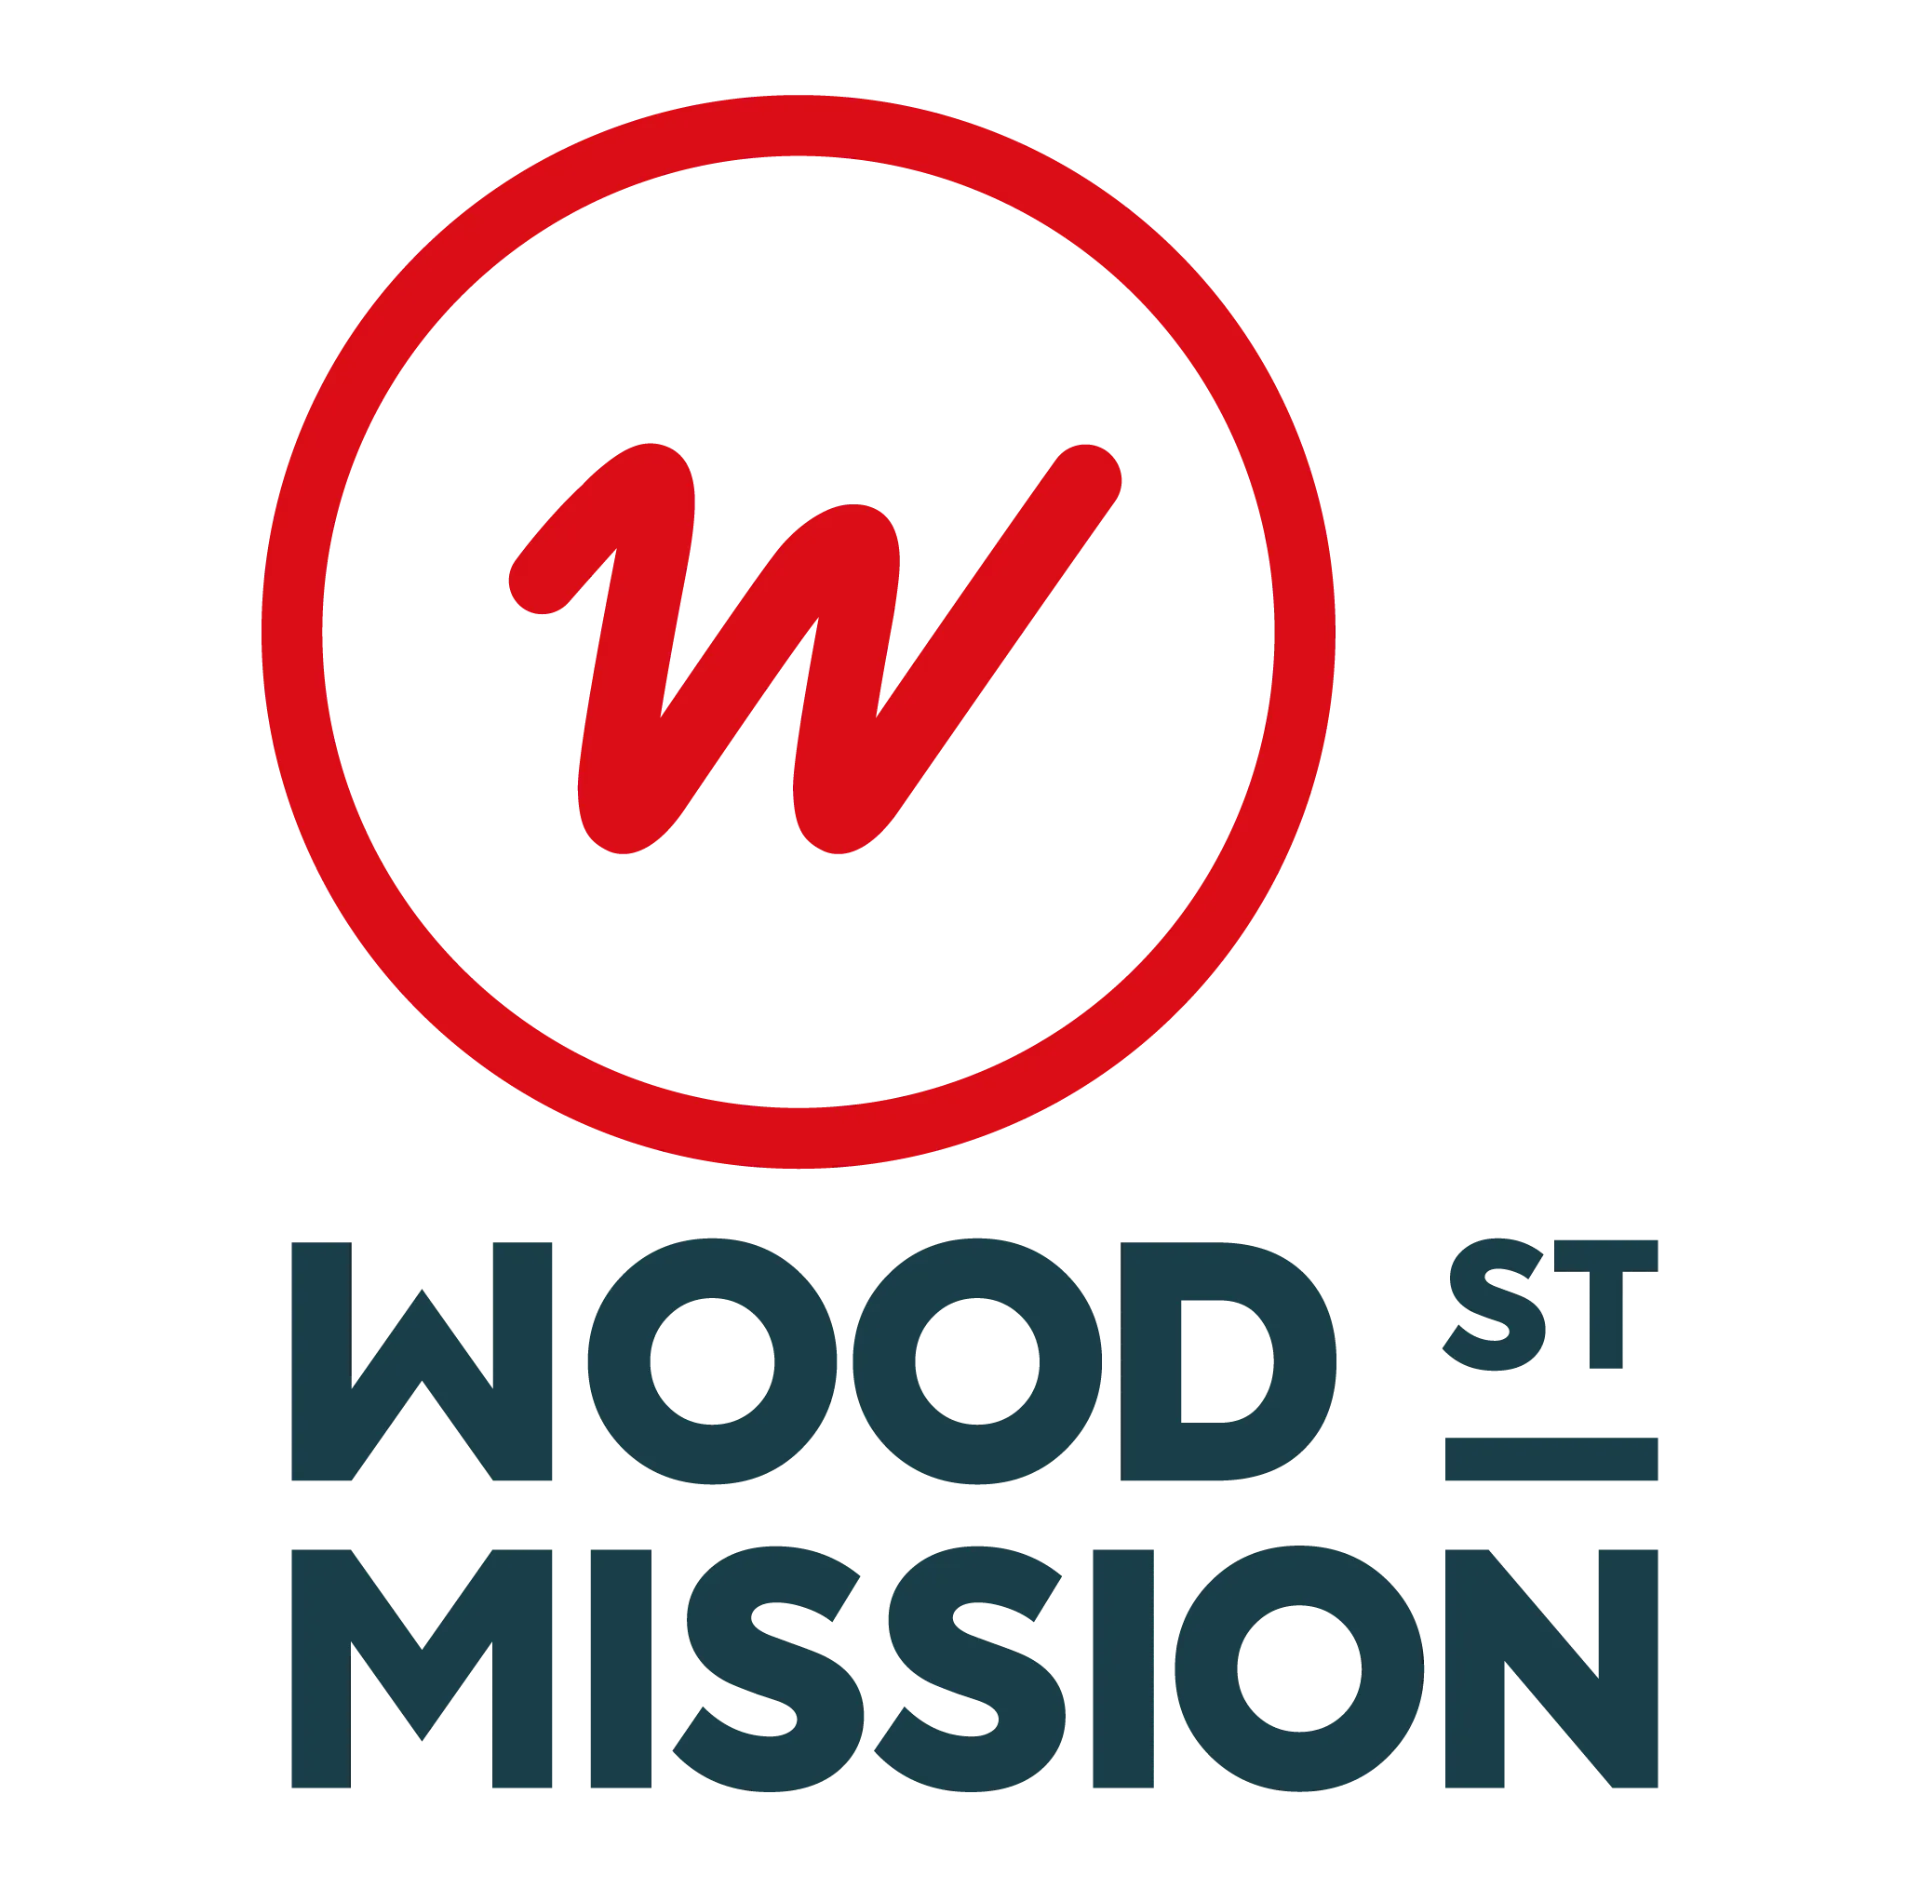 Wood Street Mission